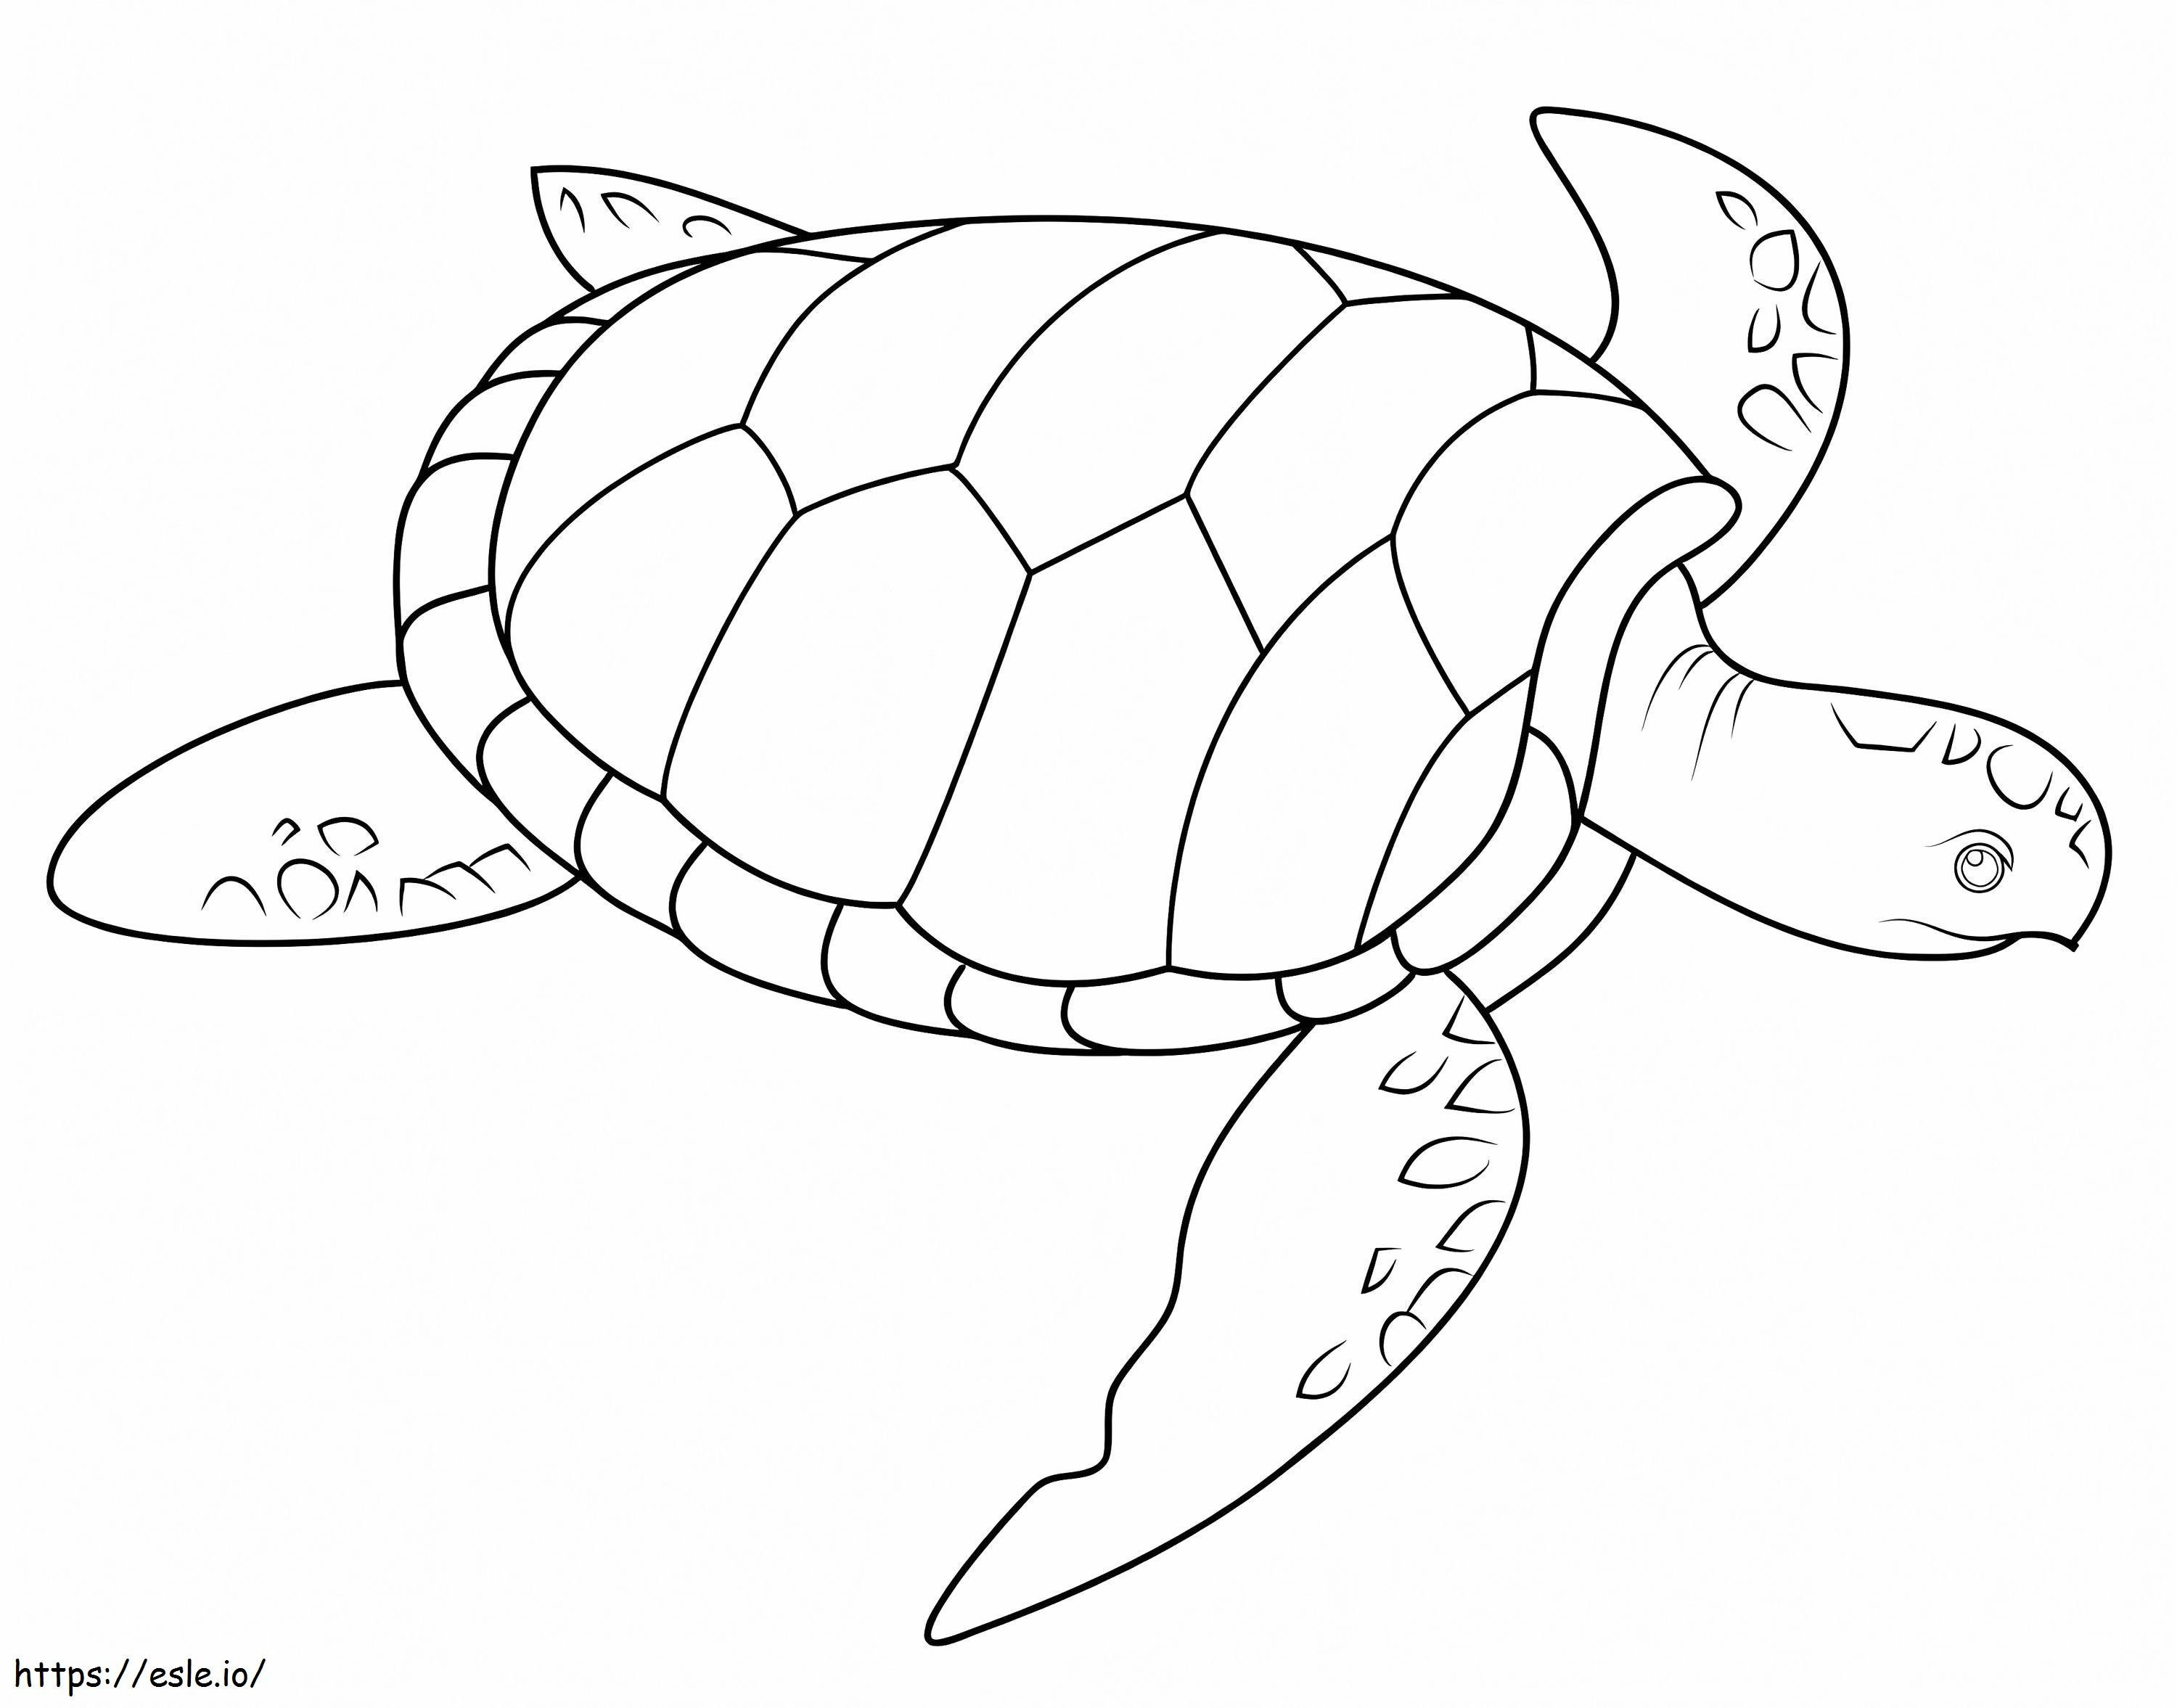 Meeresschildkröte ausmalbilder